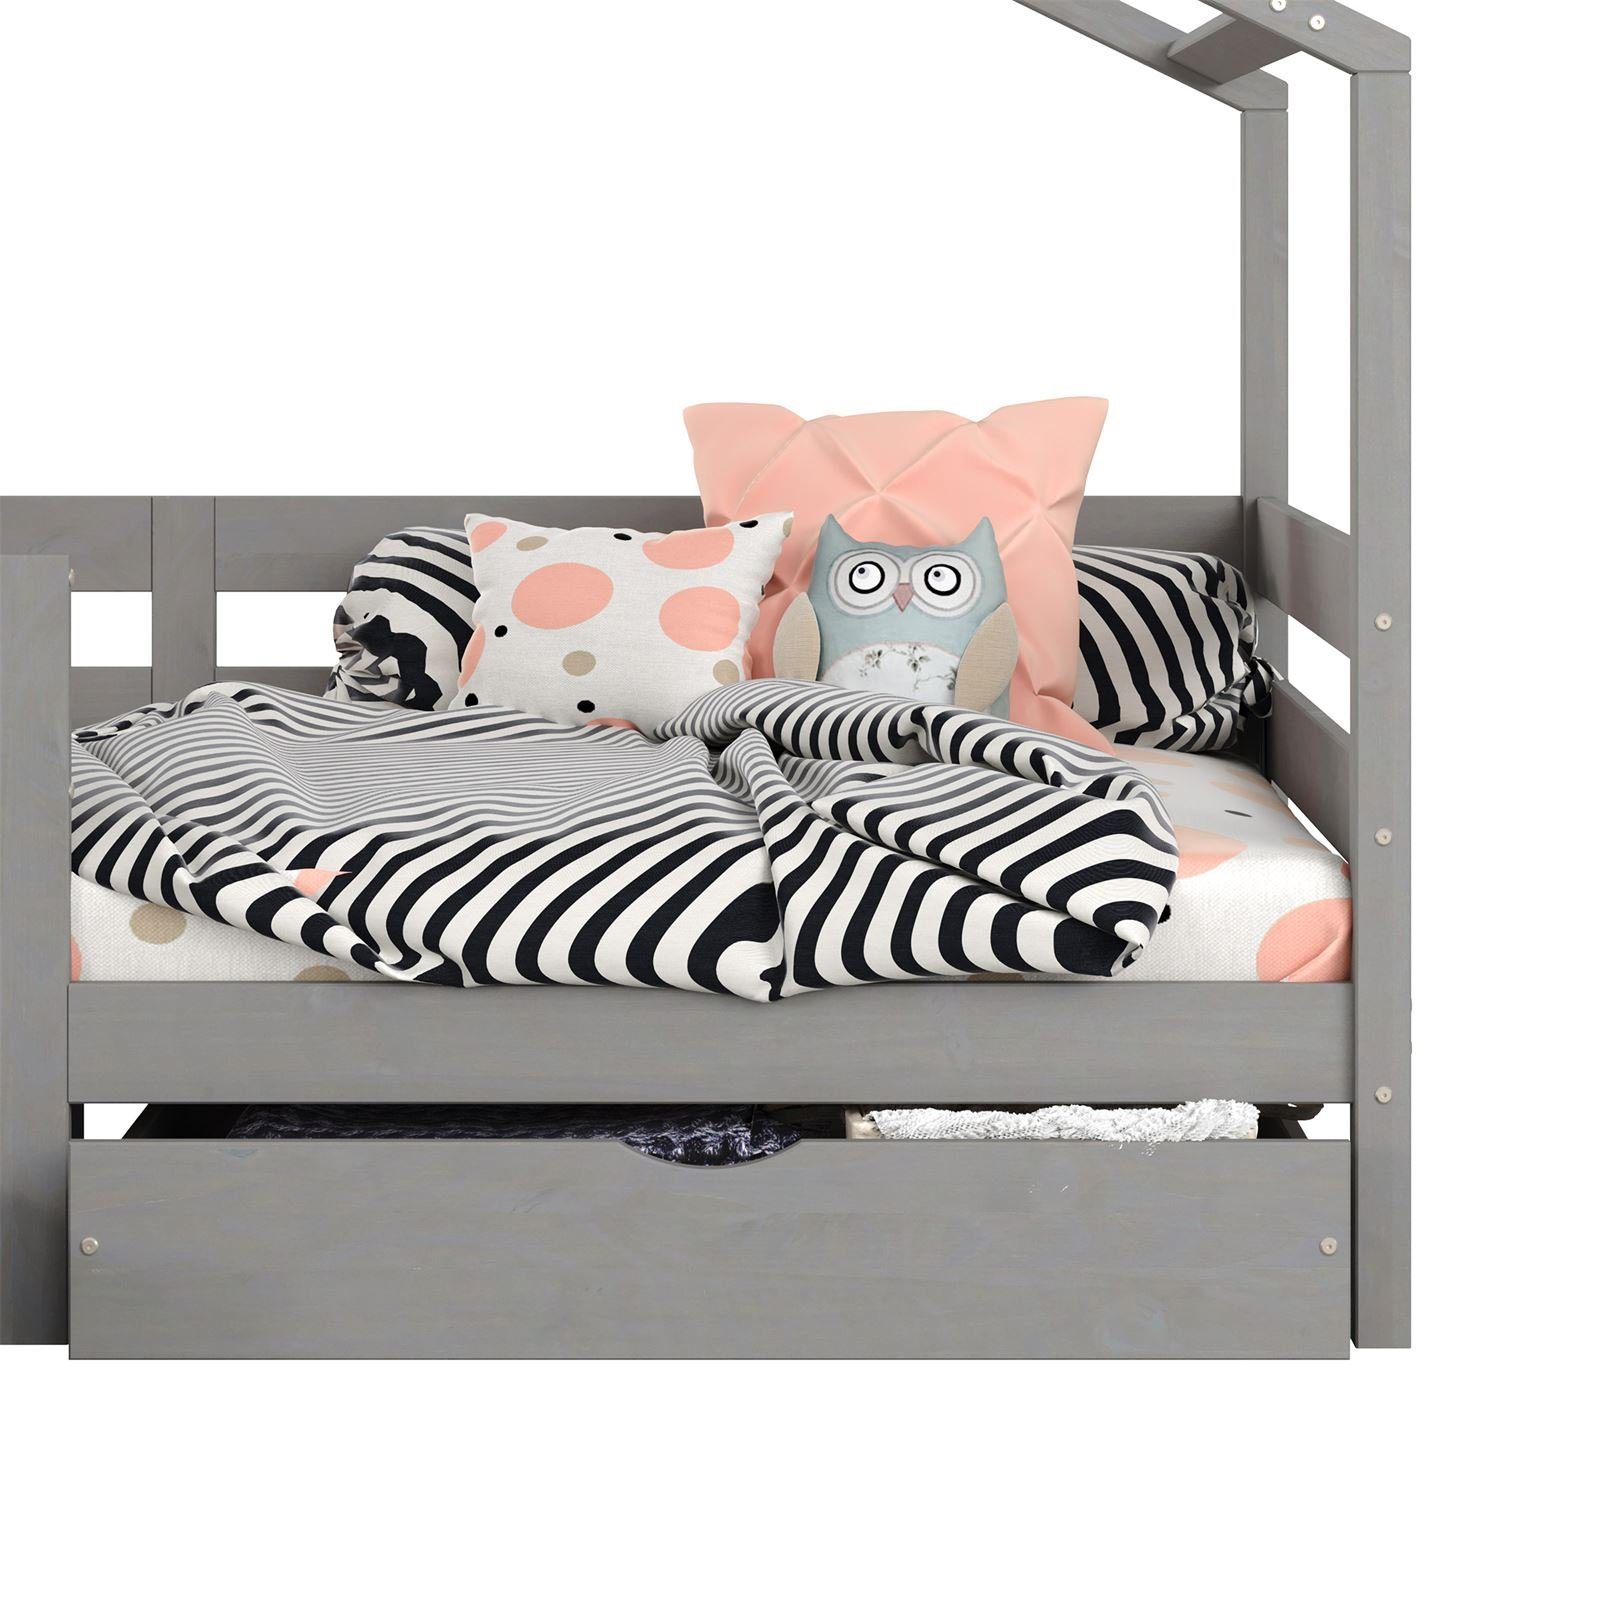 Kiefe Hausbett Kinderbett 200 Kinderbett ENA, Rausfallschutz grau Tipi 90 x IDIMEX Montessori Bett